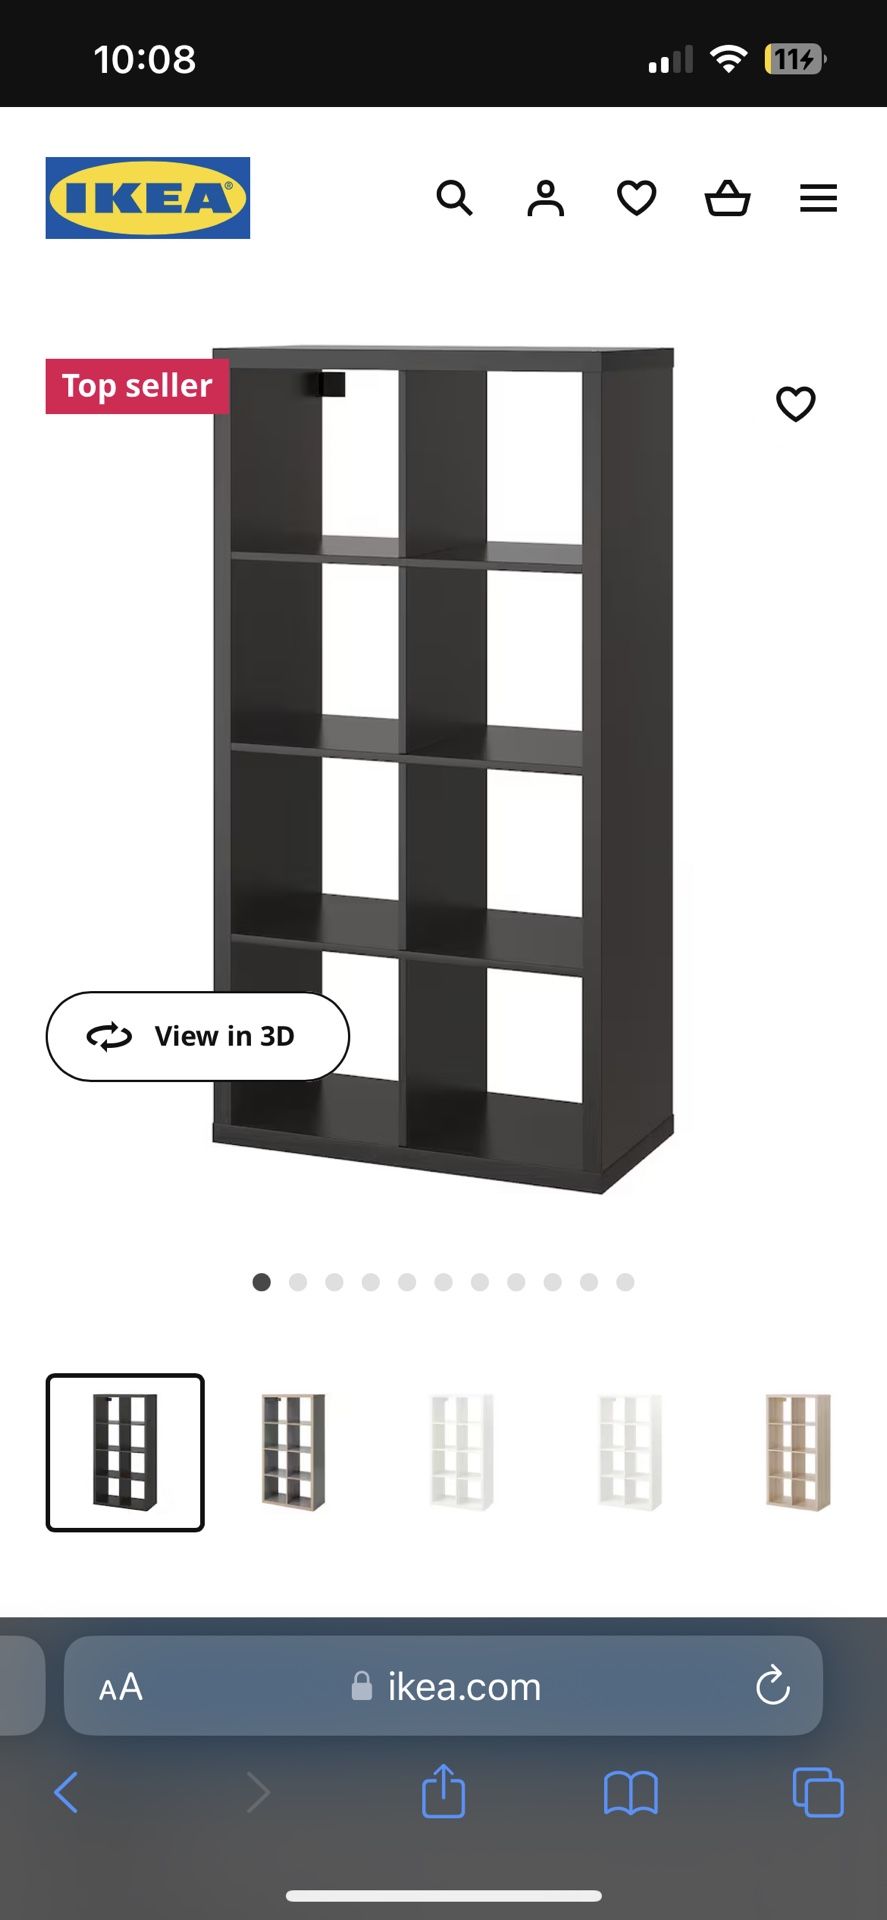 IKEA Shelf Organizer With Box